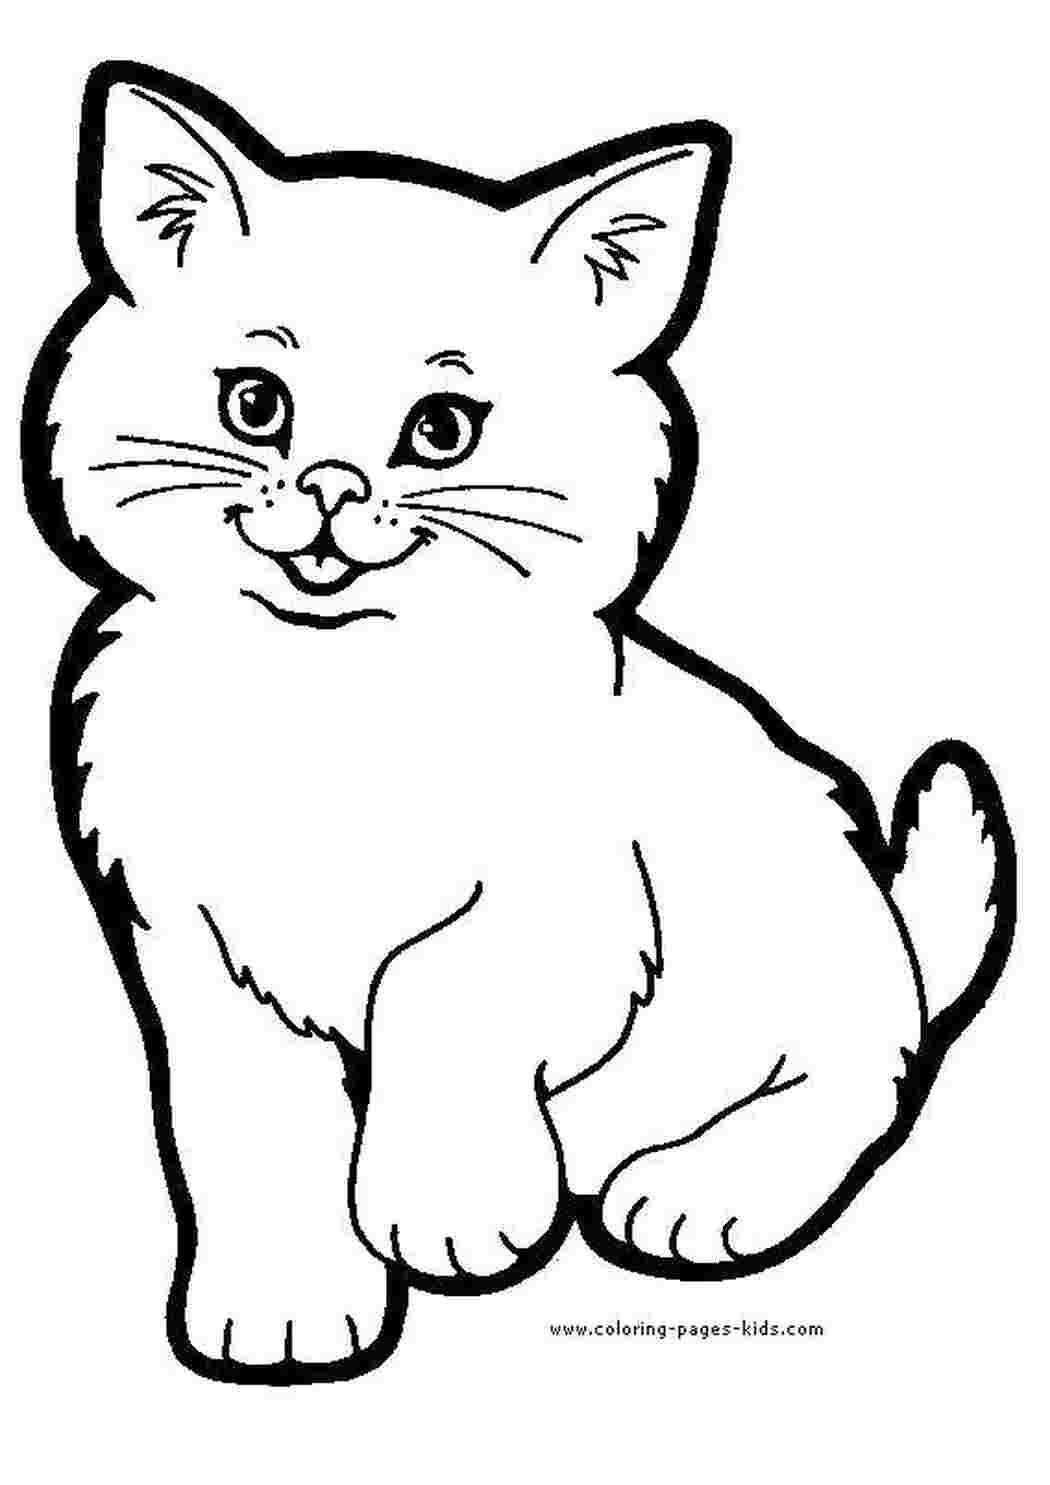 Рисунок и раскраска кошка. Как нарисовать котенка. Сборник для детей